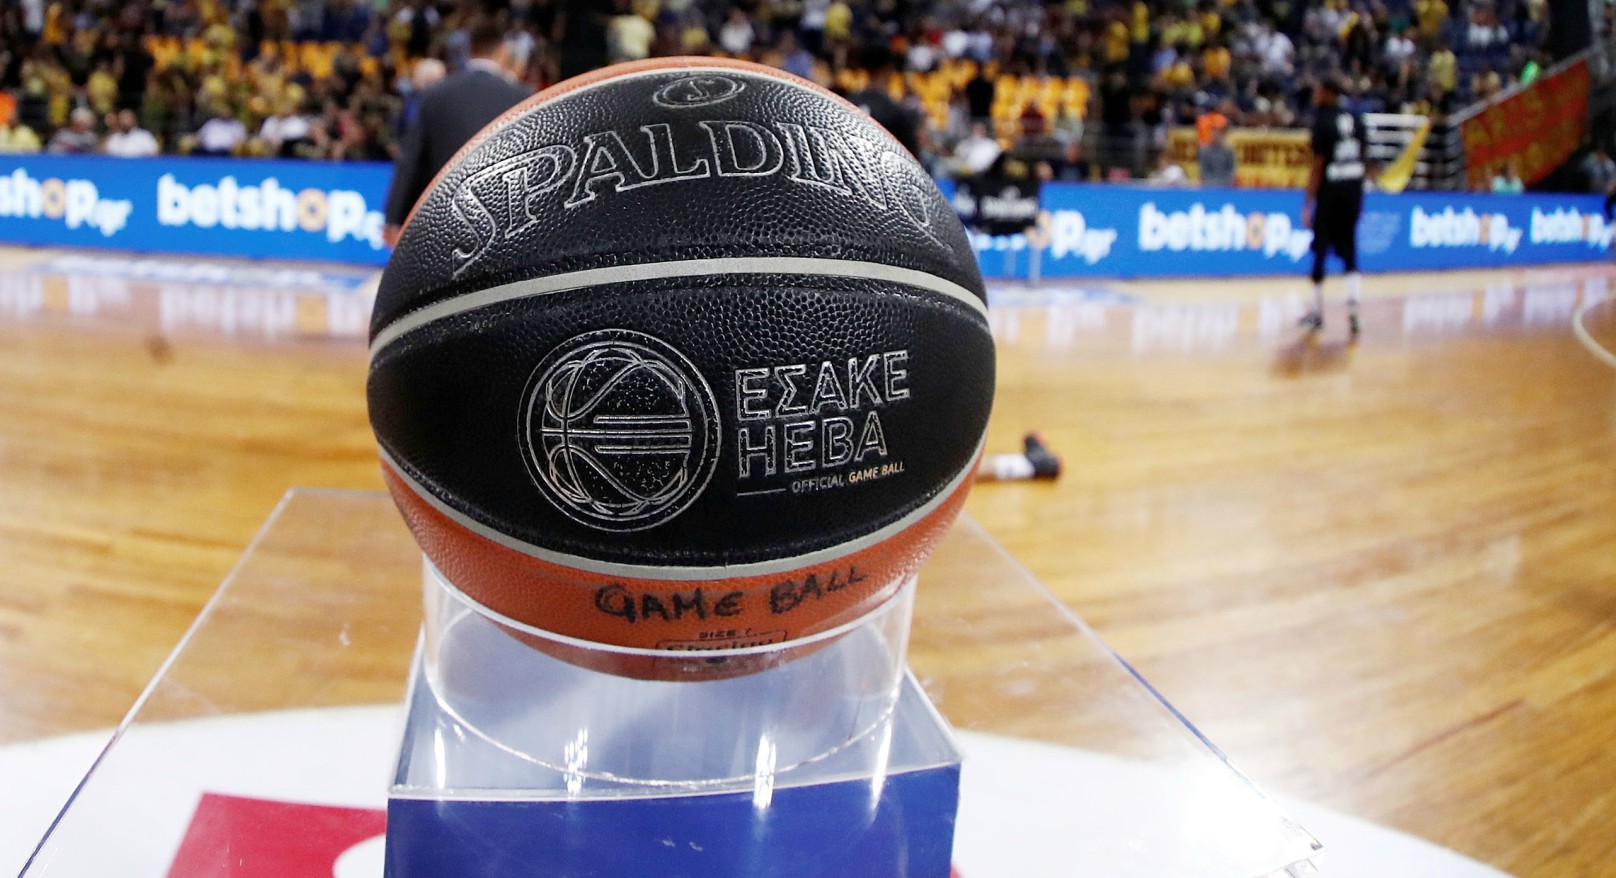 ΕΣΑΚΕ: Αναβλήθηκε η πρεμιέρα (17-18/10) της Basket League!